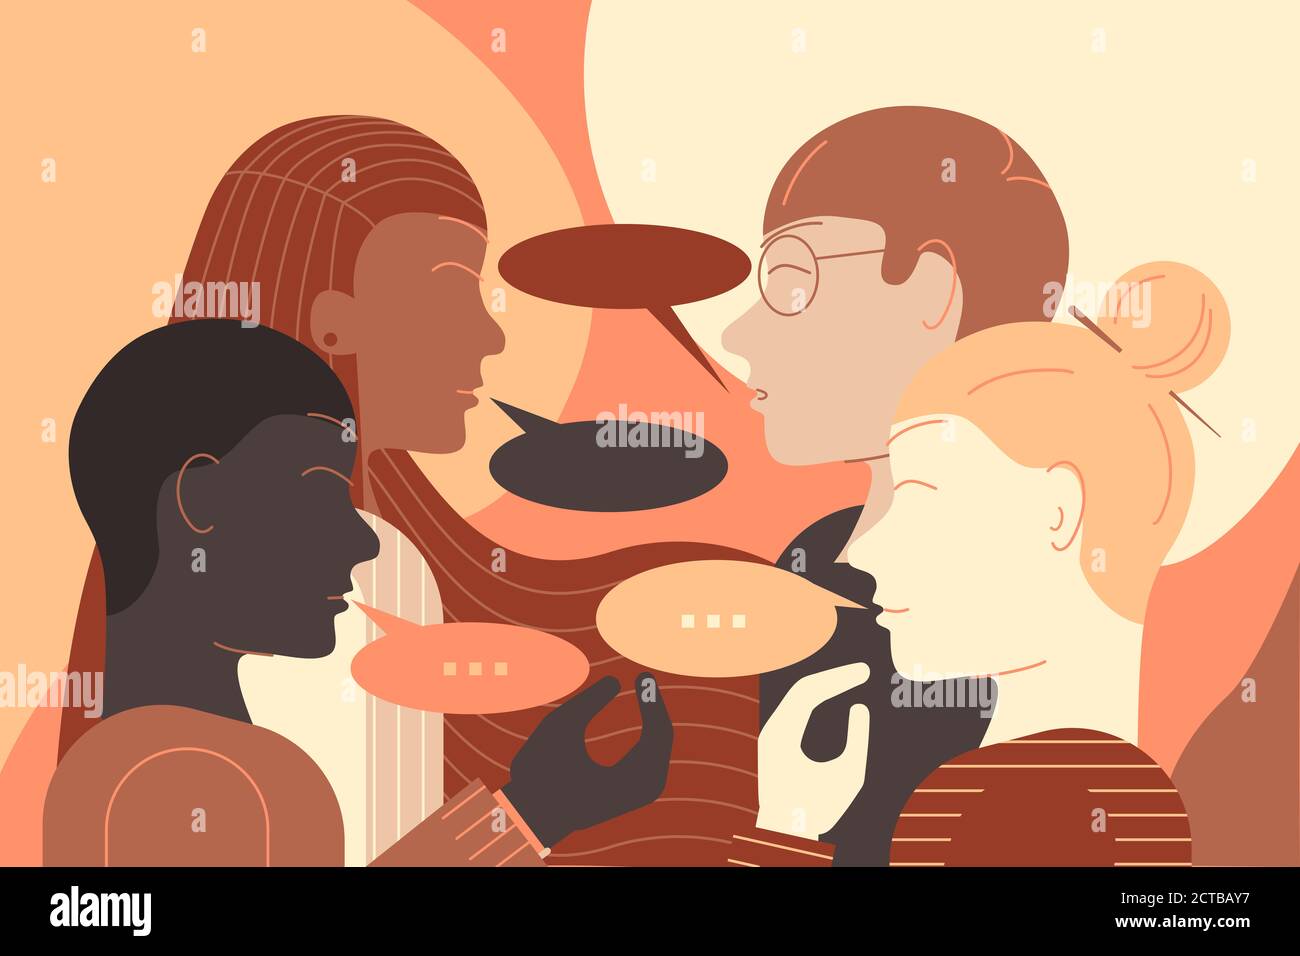 Illustration d'un groupe de jeunes de différentes ethnies ayant une conversation face à face. Illustration de la conception plate. Banque D'Images